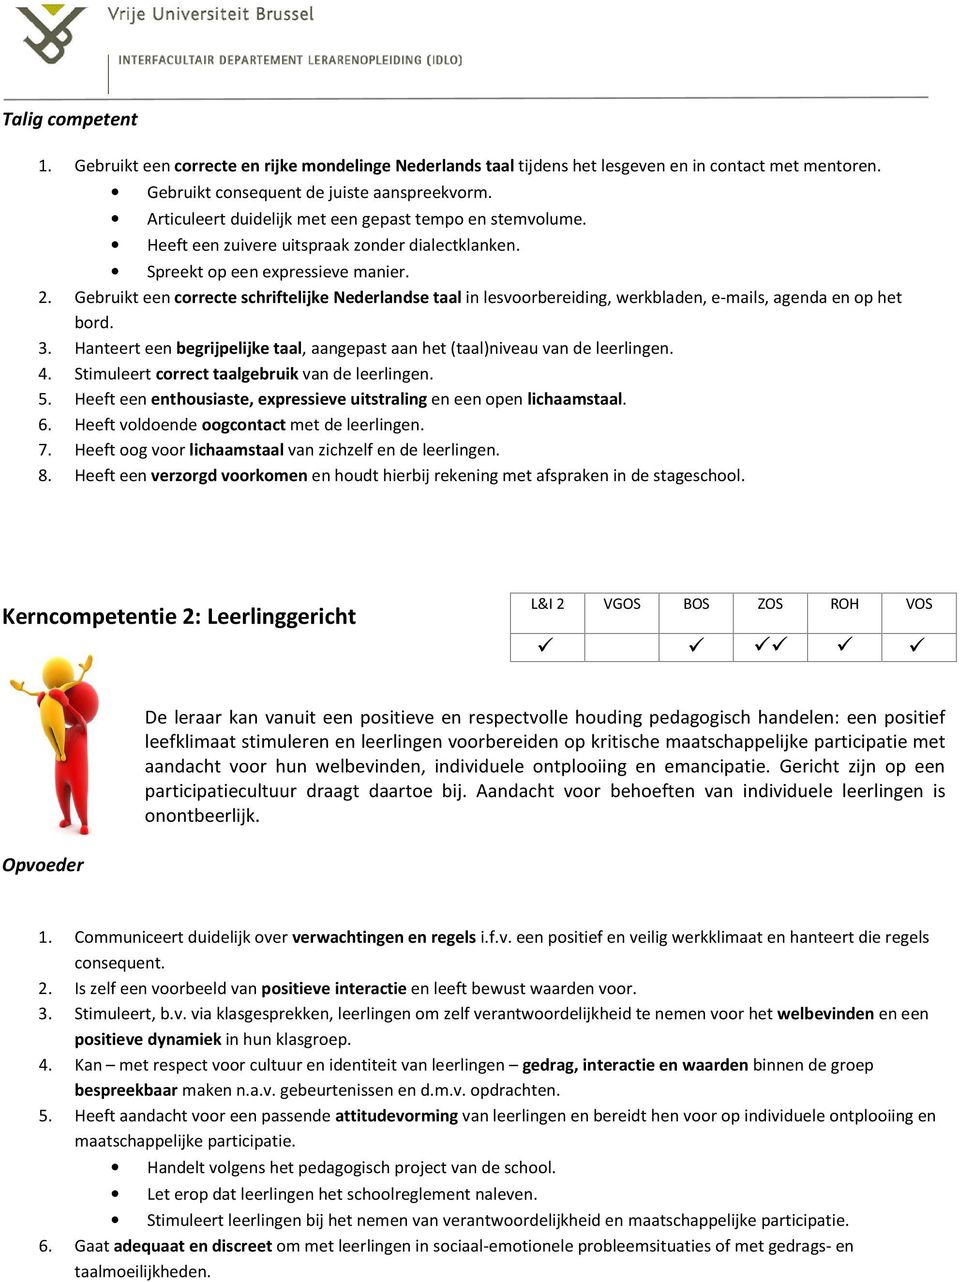 Gebruikt een correcte schriftelijke Nederlandse taal in lesvoorbereiding, werkbladen, e-mails, agenda en op het bord. 3.